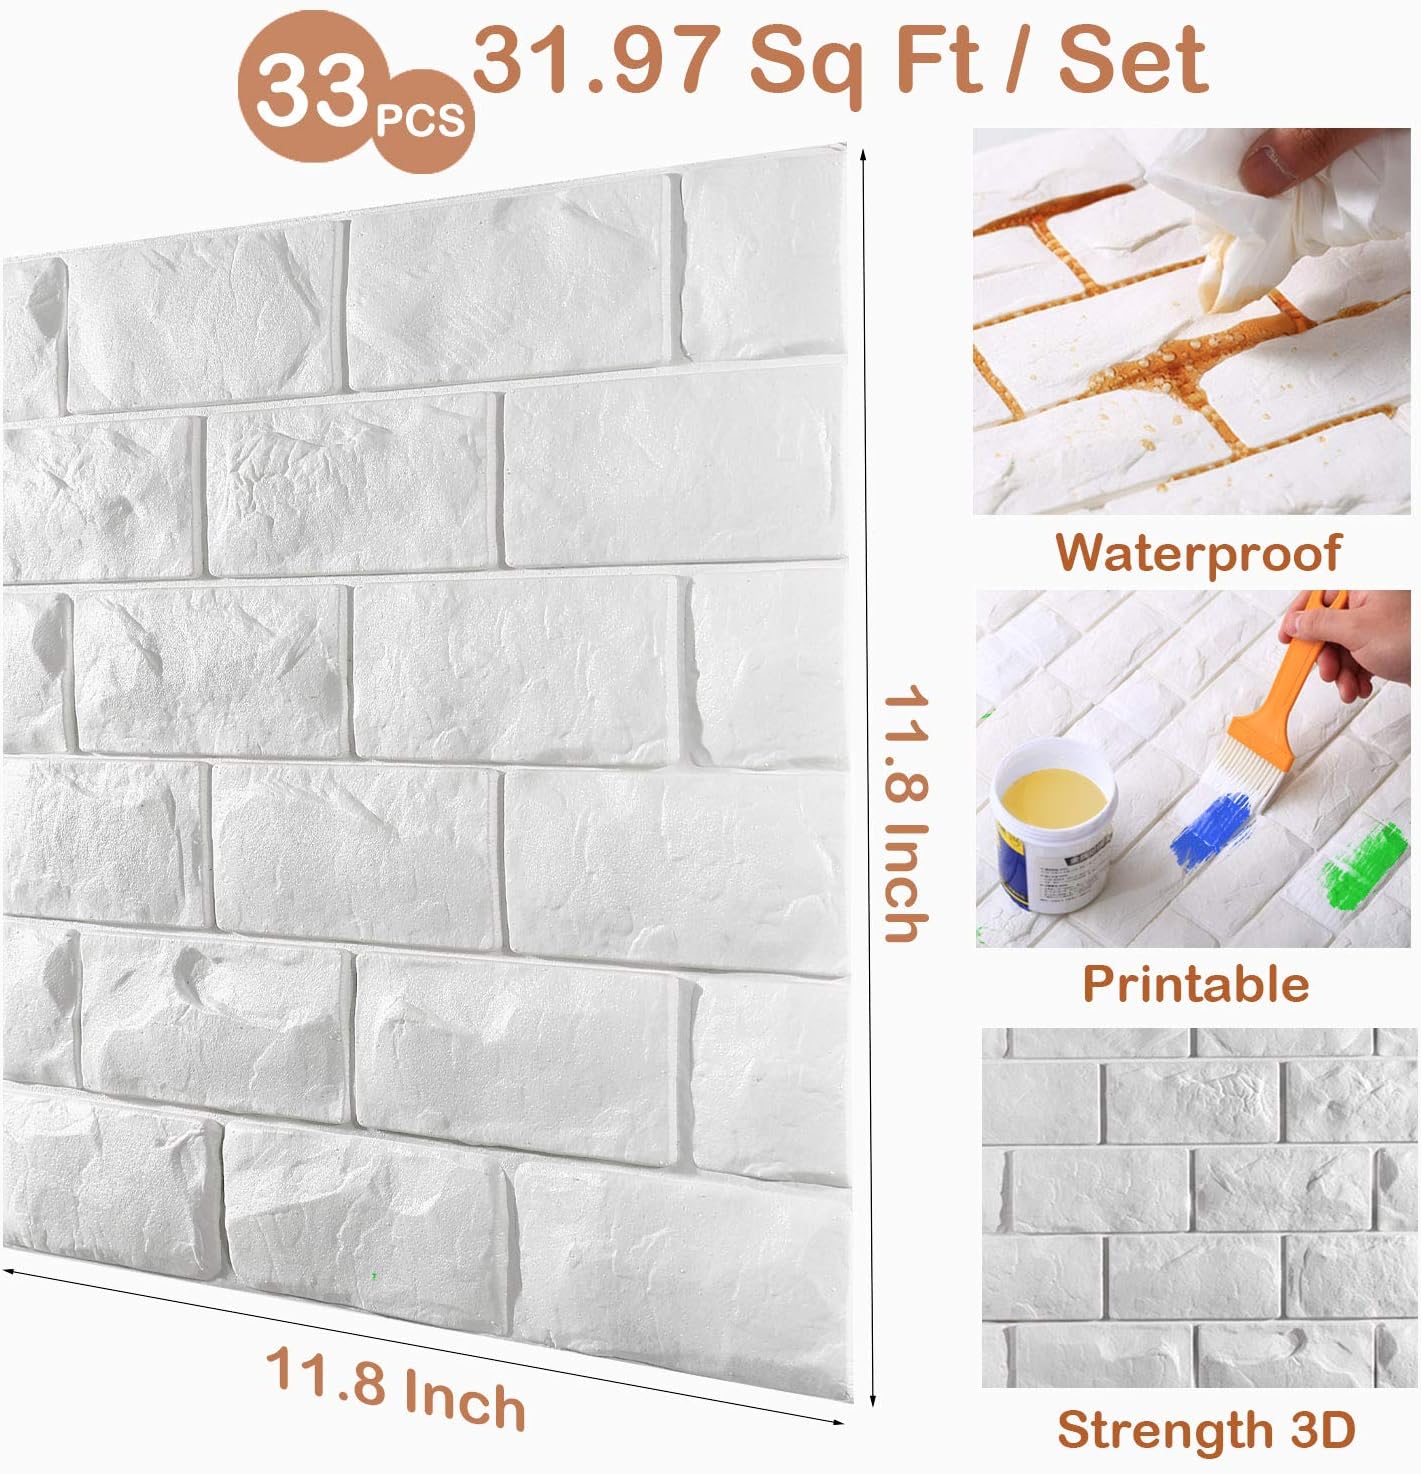 30 paneles de pared 3D, papel pintado 3D imprimible de ladrillo blanco, adhesivo y despegable, paneles de ladrillo sintético de espuma impermeable autoadhesivos para dormitorio, baño, cocina, chimenea (cobertura de 29,06 pies cuadrados)